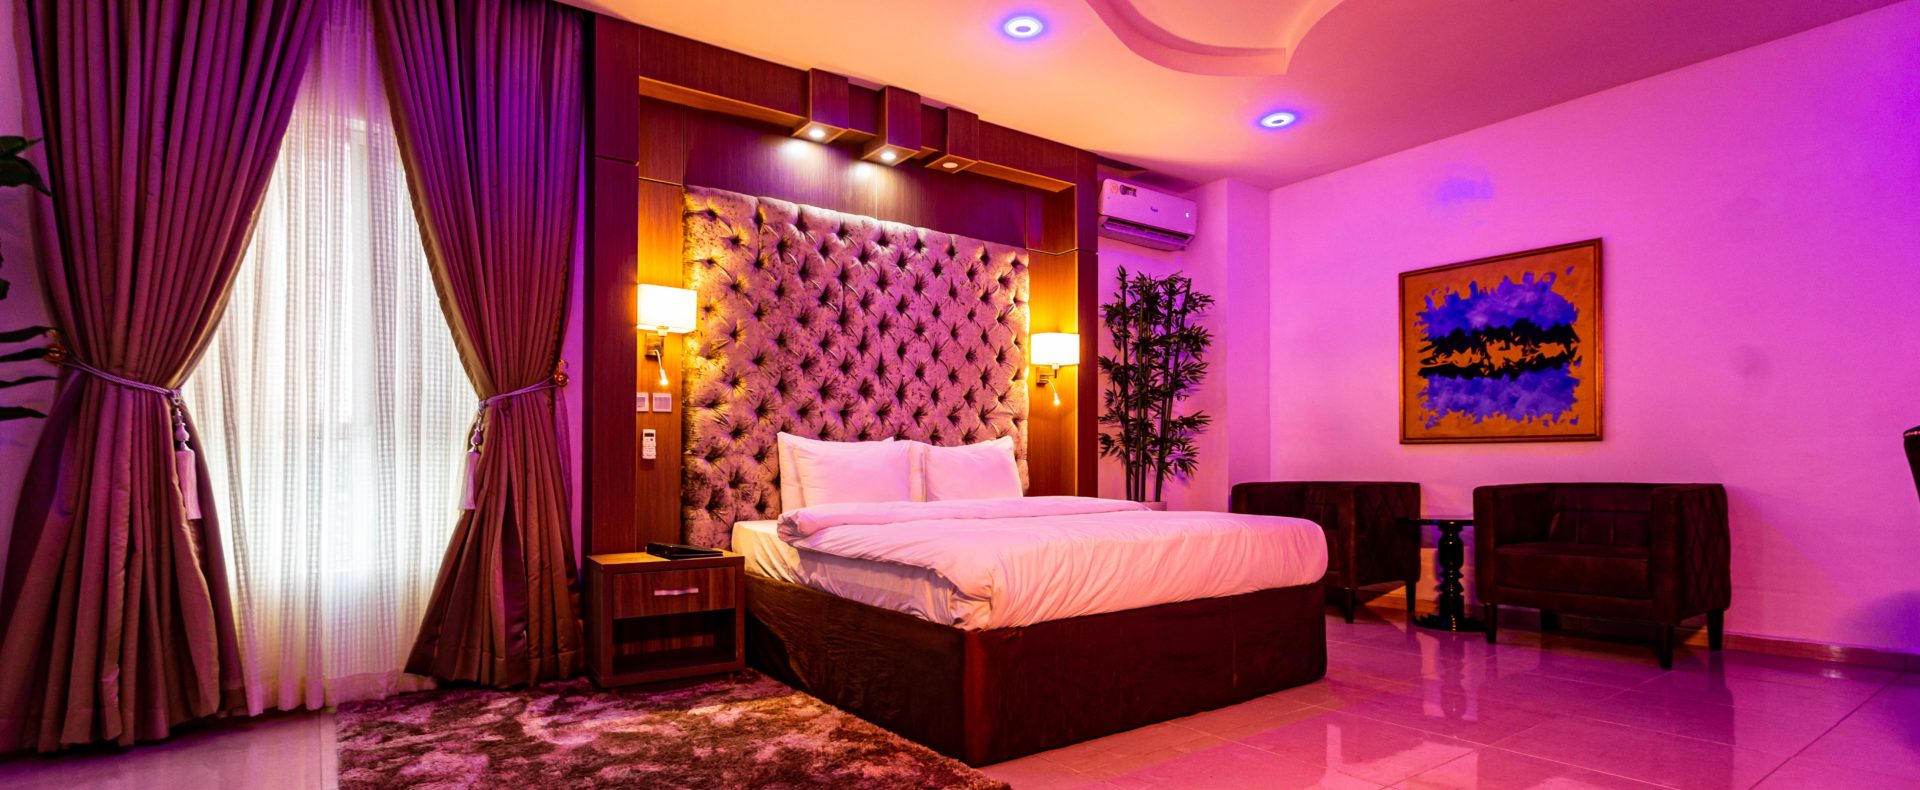 Hotel Diamond Suite In Owerri Imo Nigeria